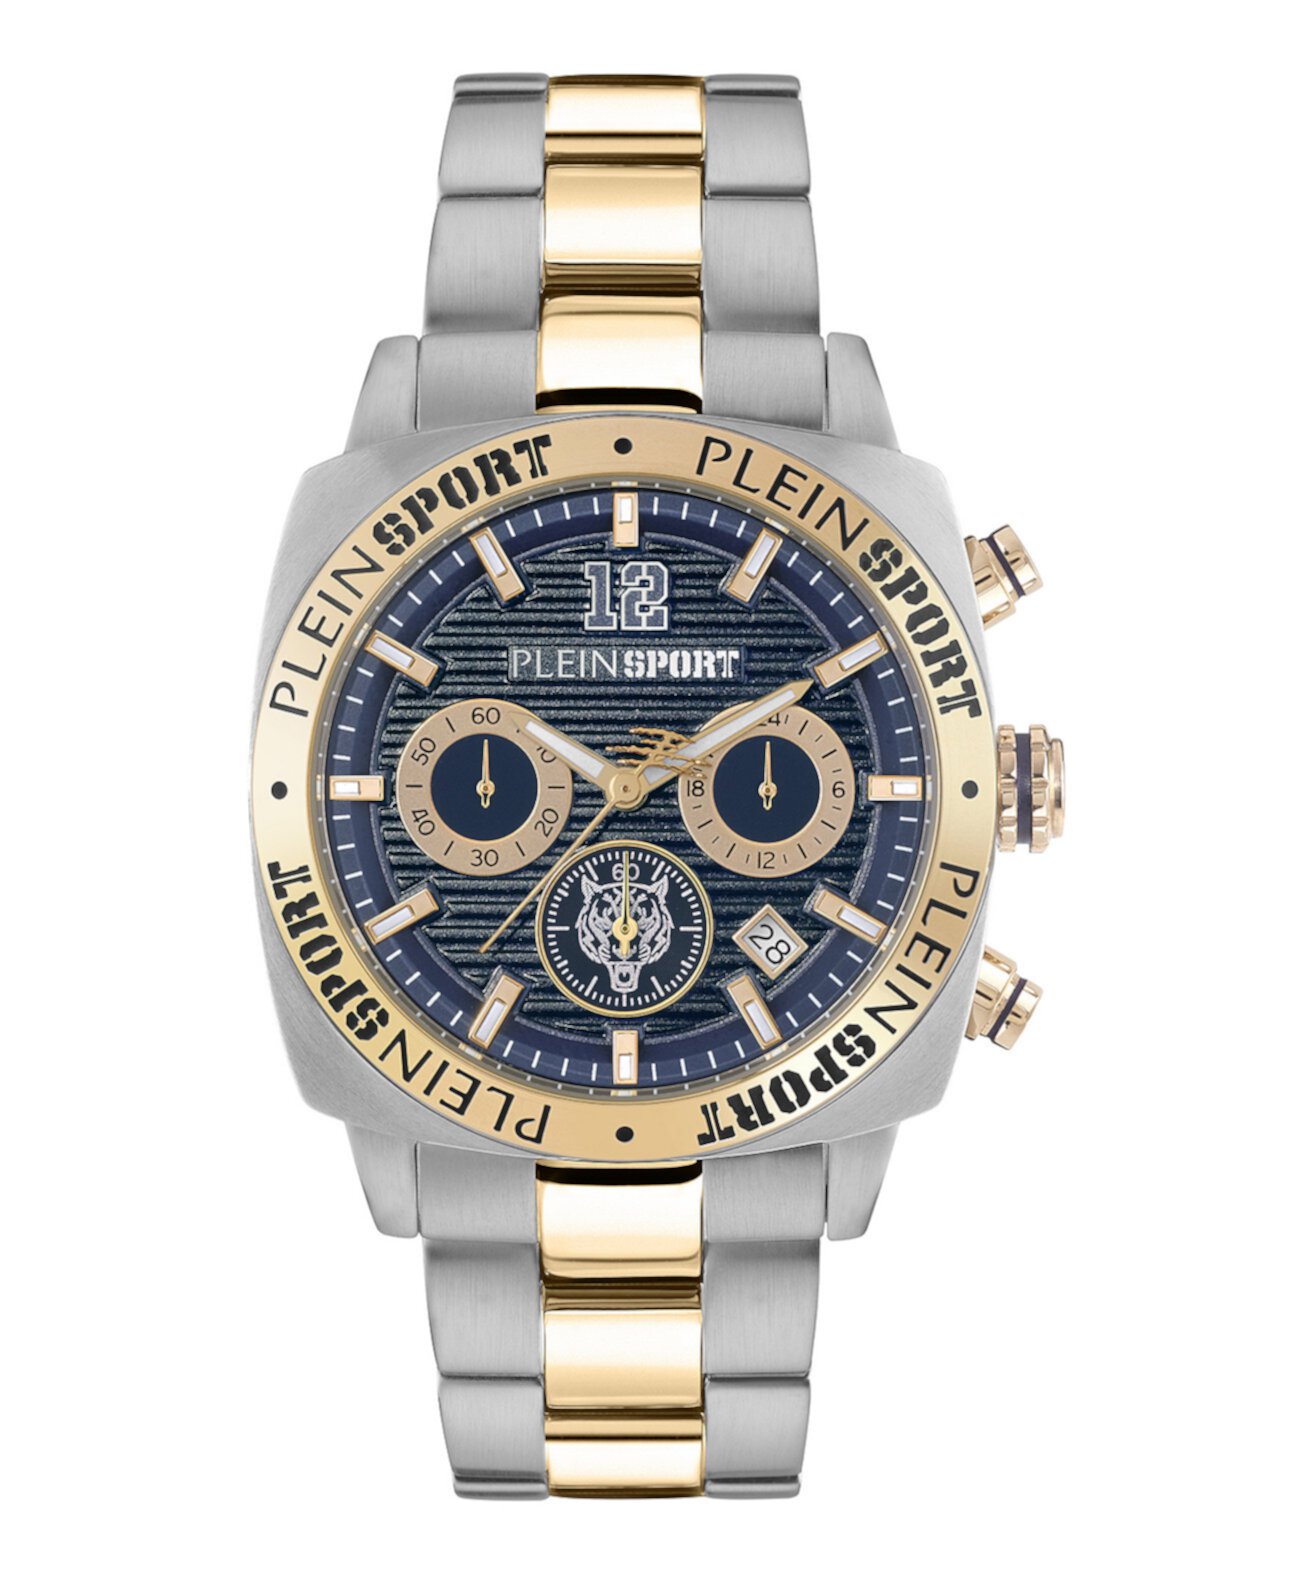 Мужские часы Wildcat с золотистым и серебристым браслетом из нержавеющей стали, 40 мм Plein Sport